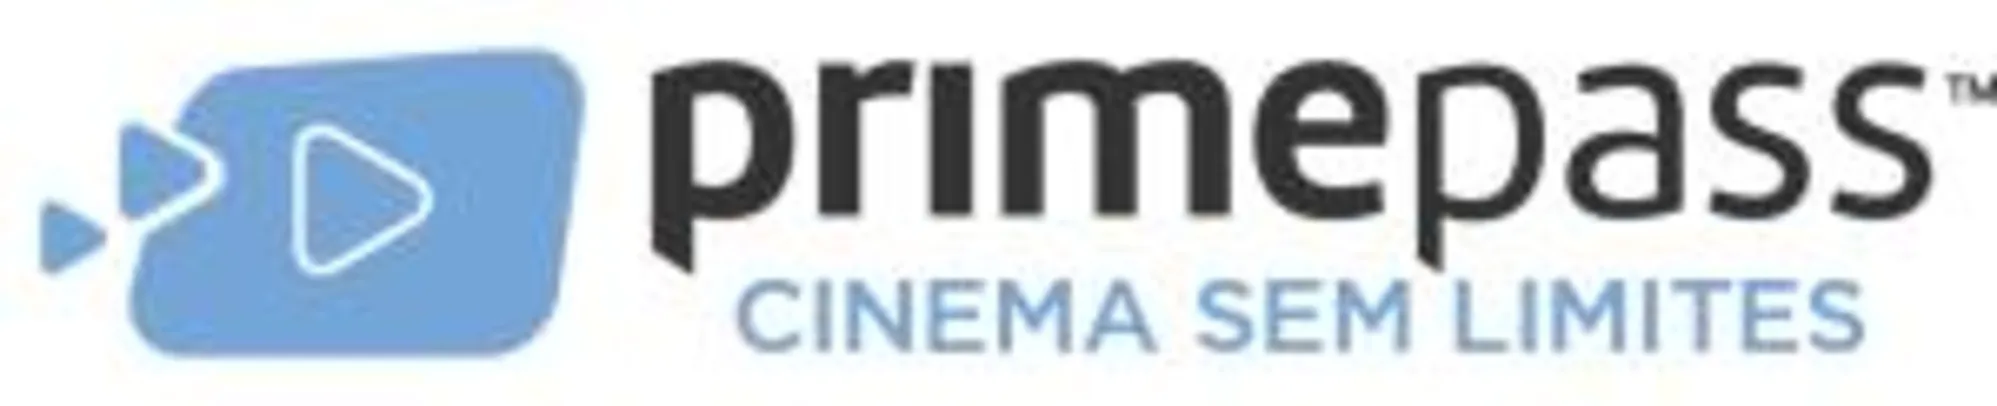 Primepass: 1 mês de Cinema DUO grátis (no plano anual)